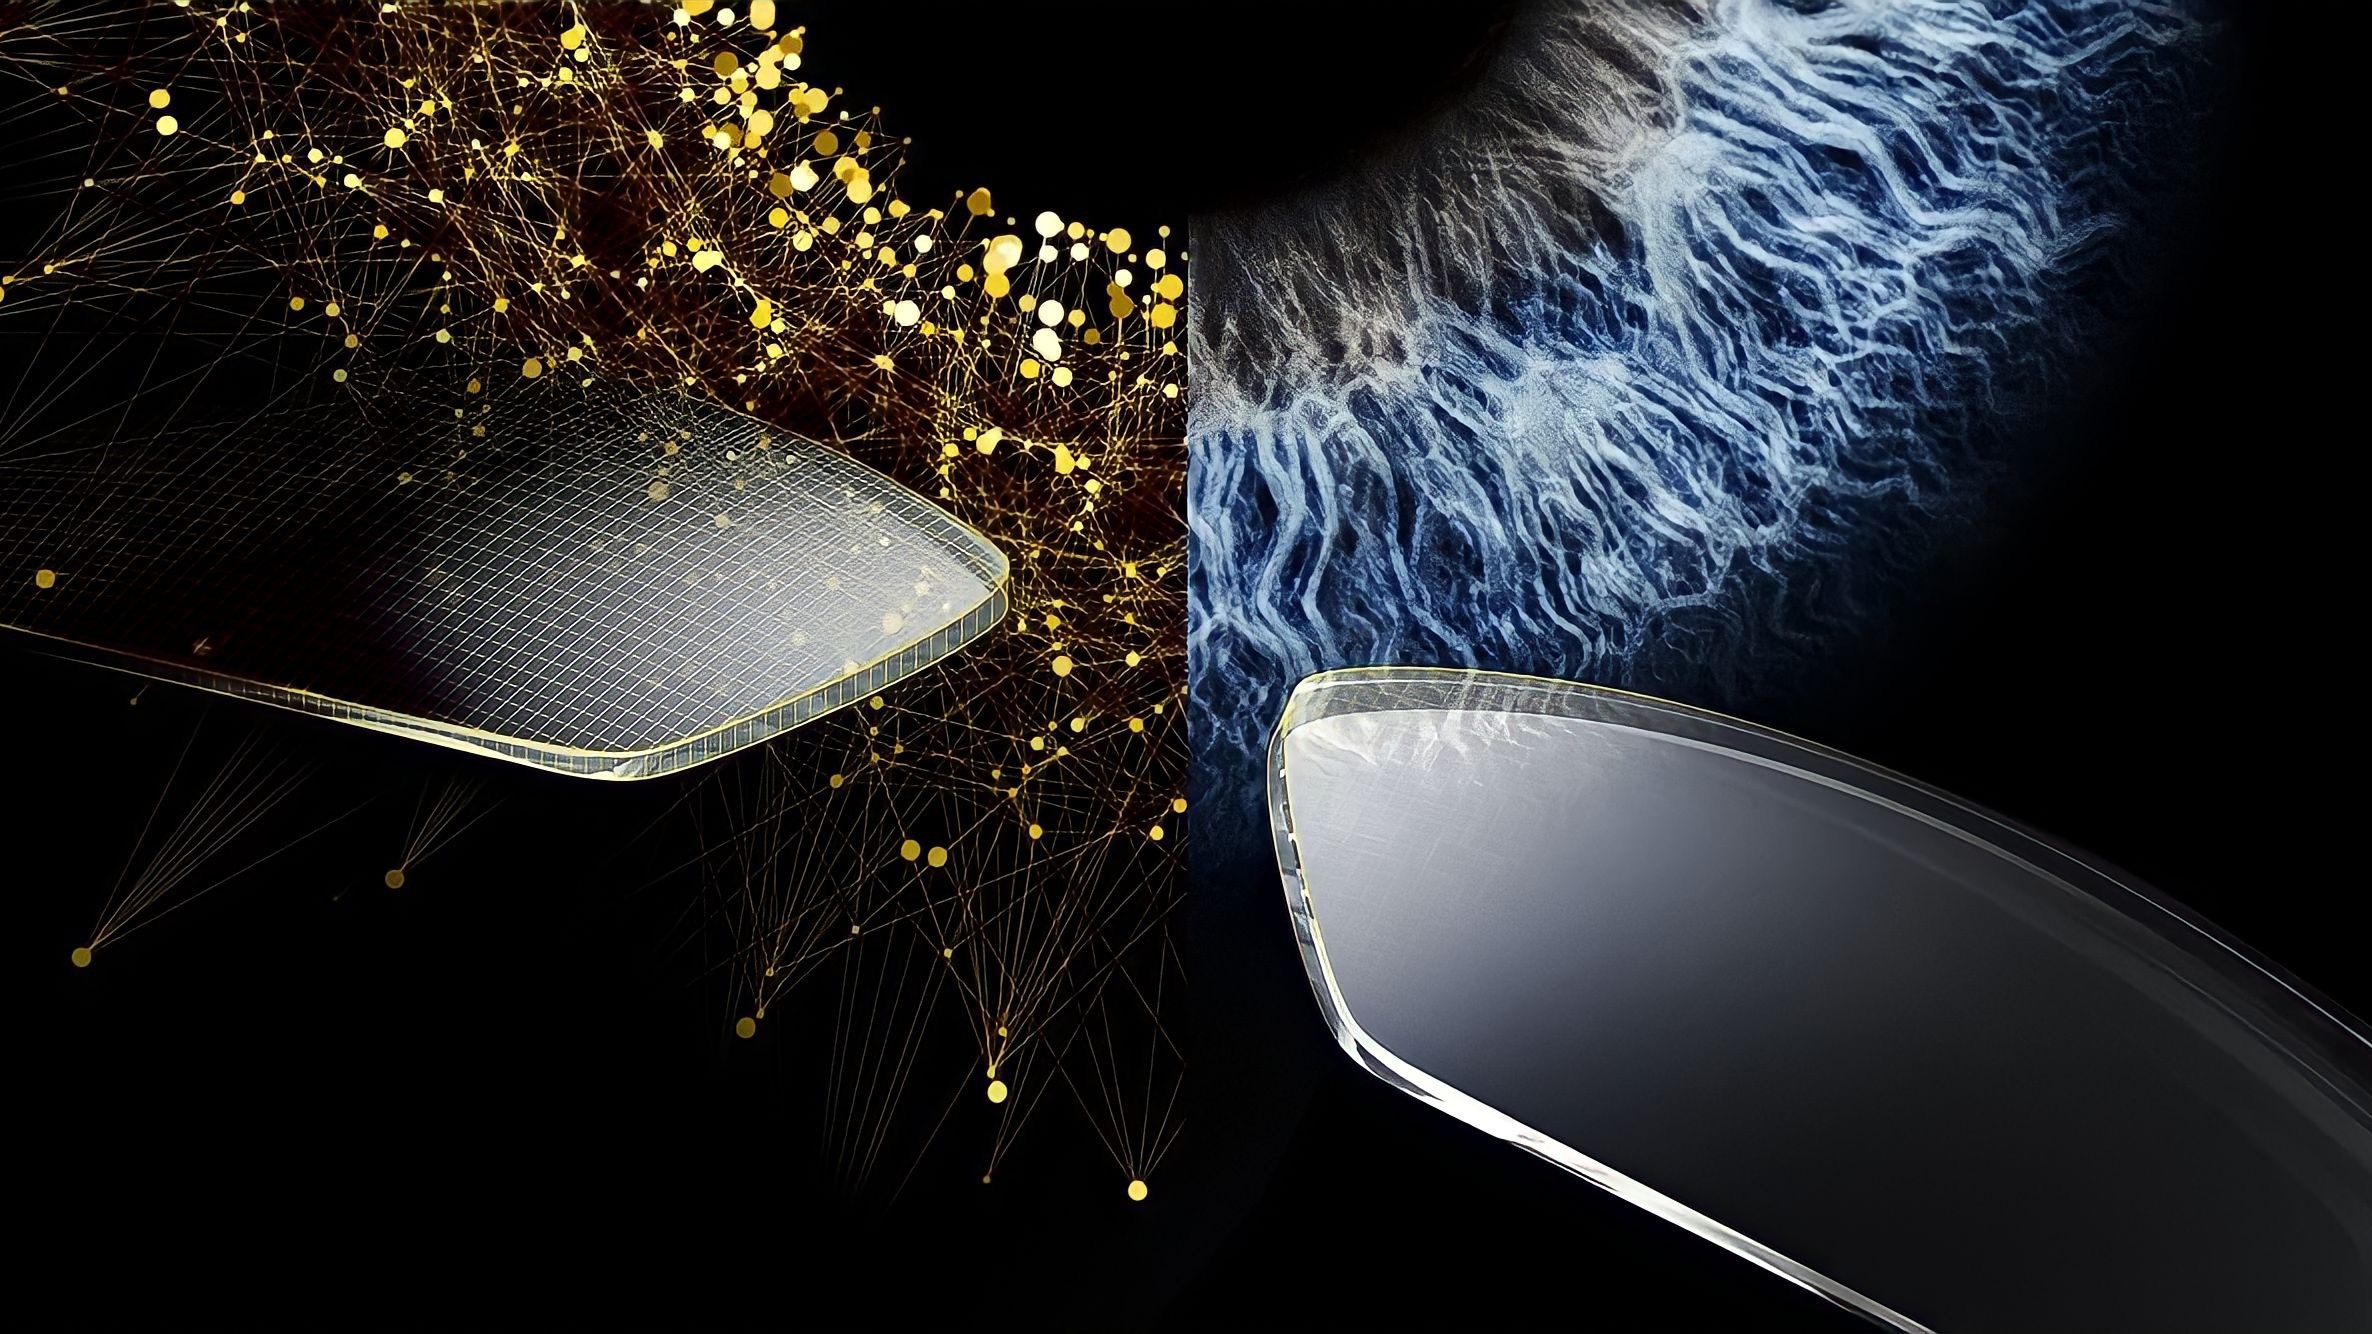 Zeiss i.Profiler® plus 客製化你的視界－光明分子．眼鏡